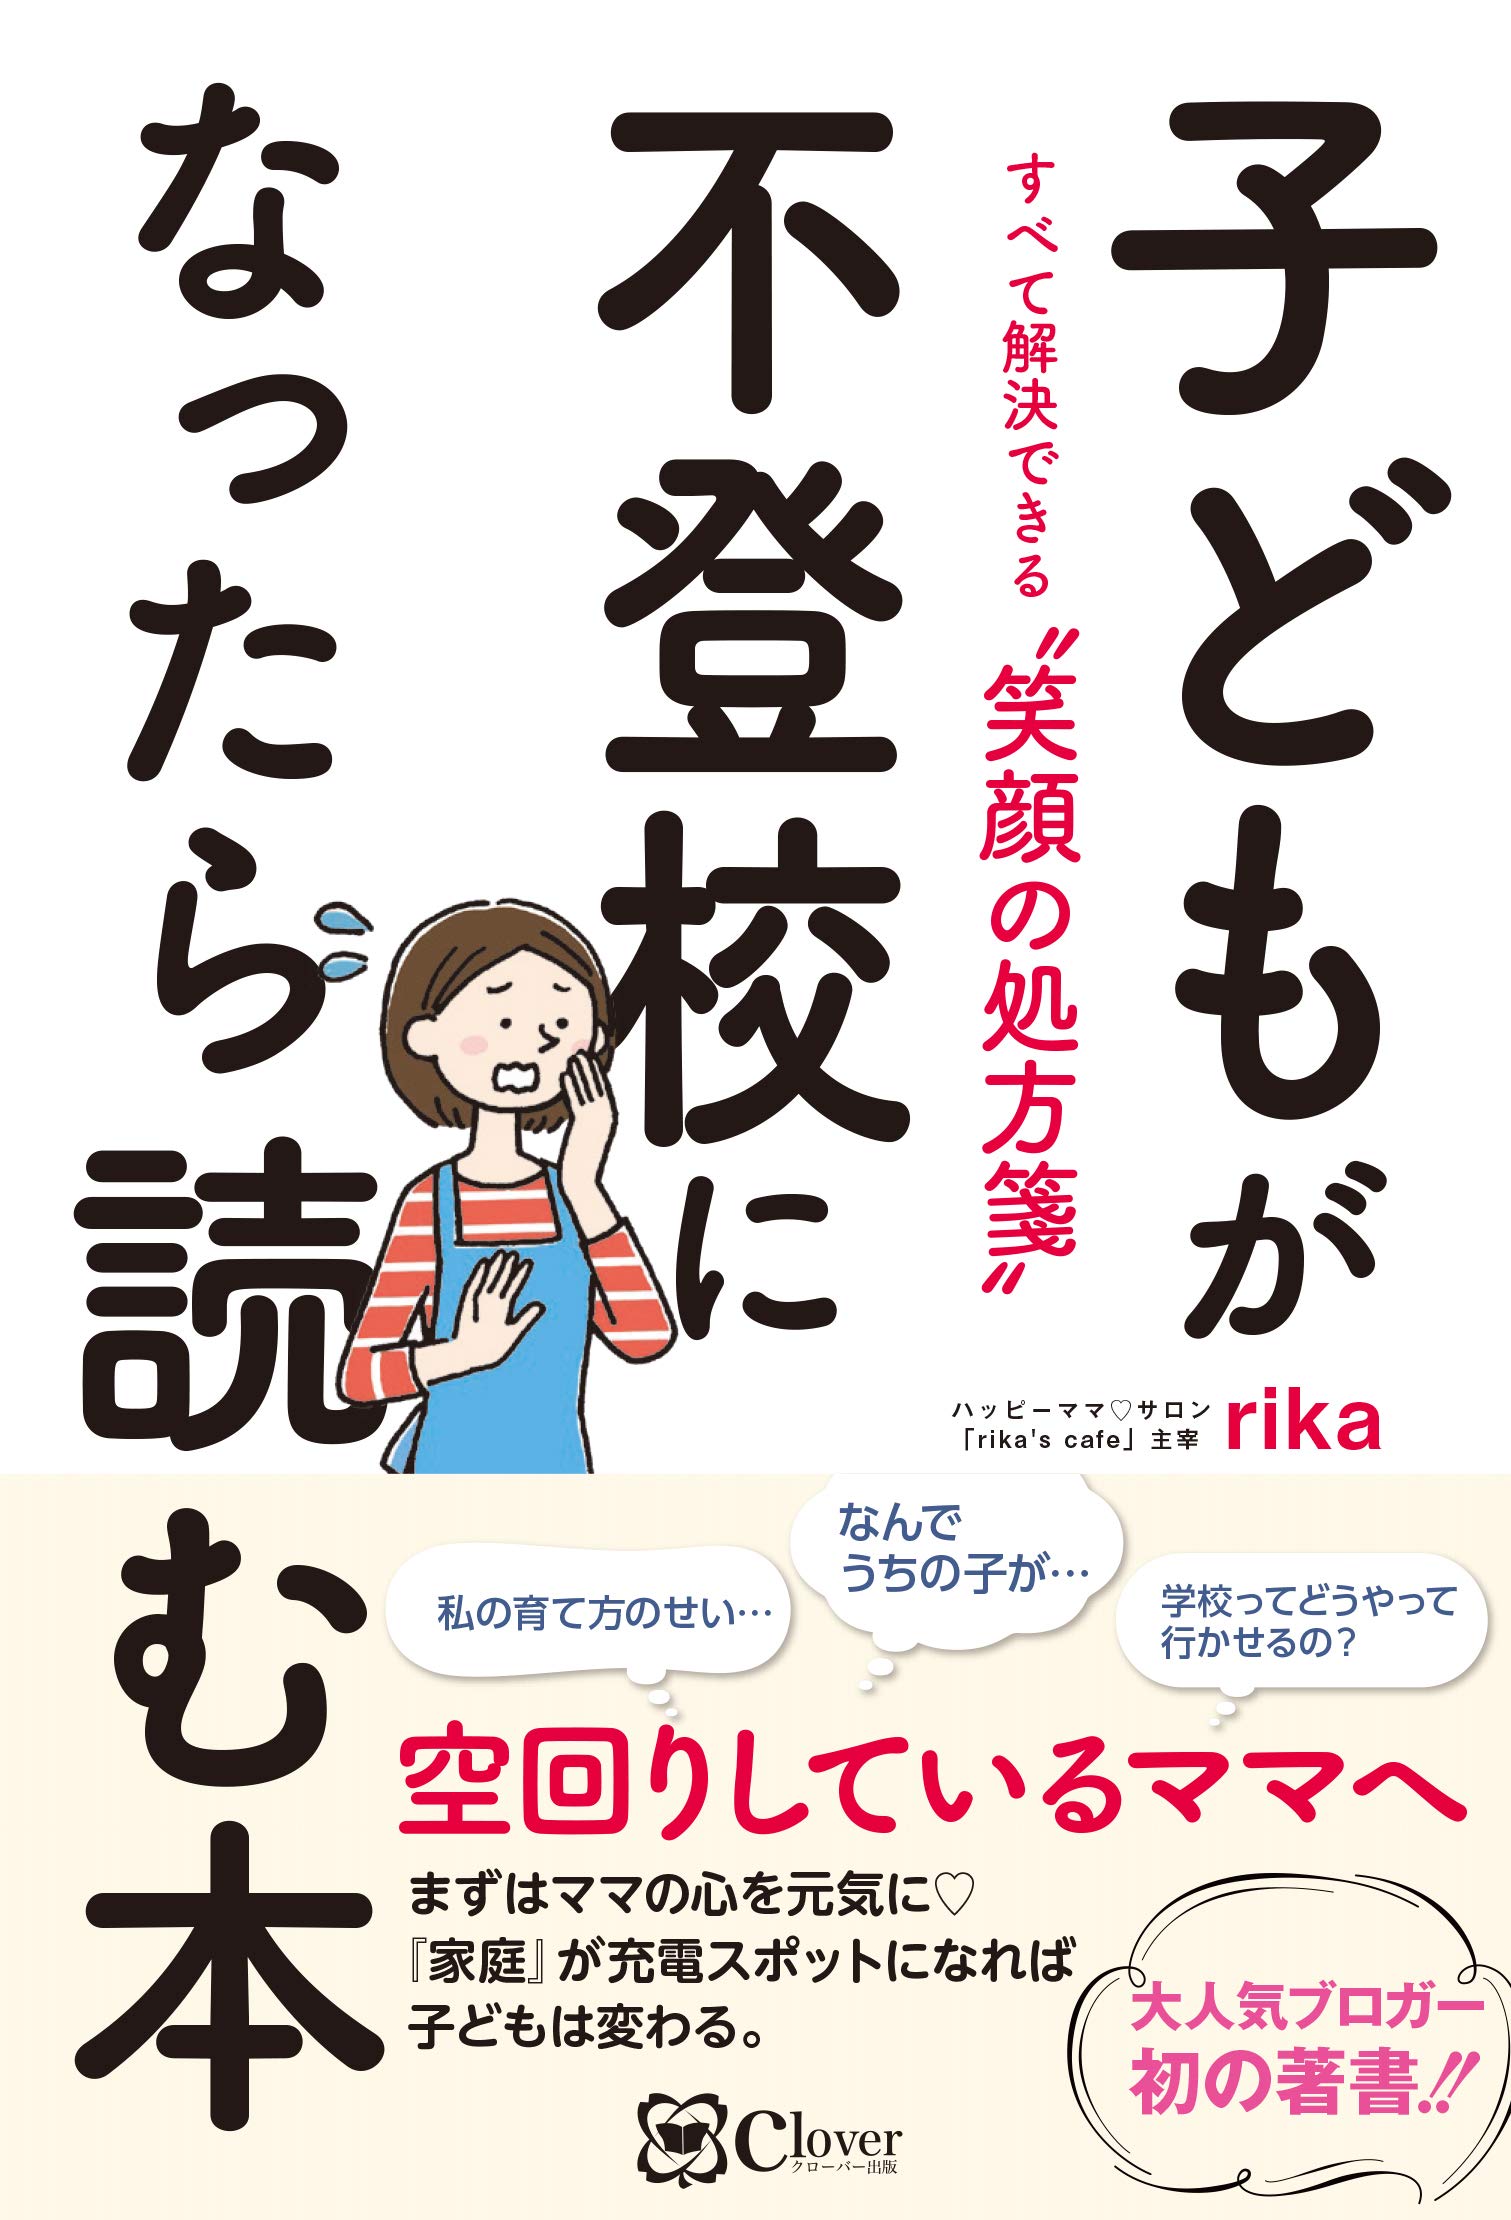 子どもが不登校になったら読む本　rika (著)　clover出版 (2021/2/25)　1,650円